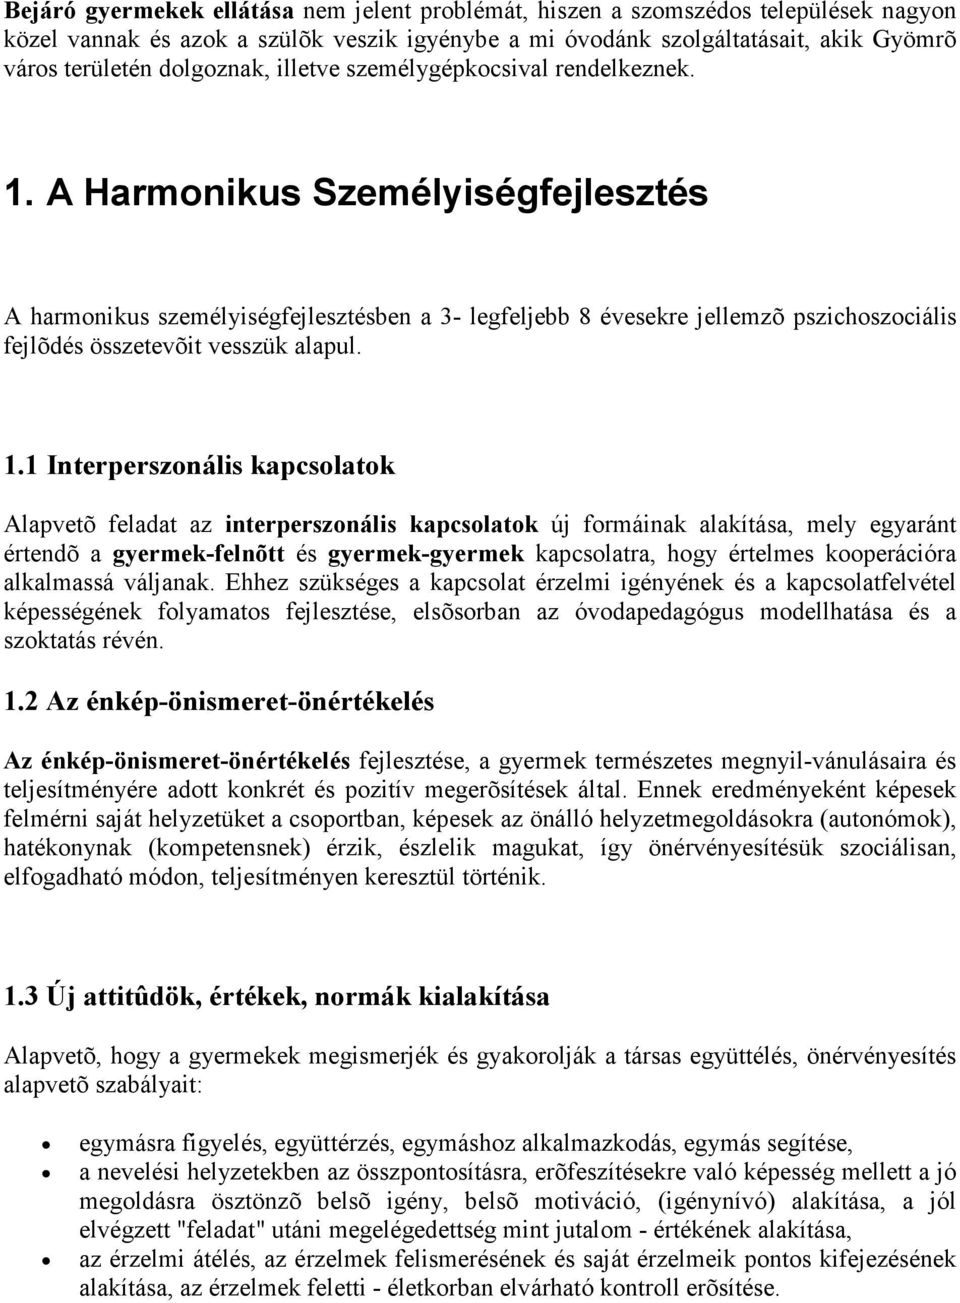 A Harmonikus Személyiségfejlesztés A harmonikus személyiségfejlesztésben a 3- legfeljebb 8 évesekre jellemzõ pszichoszociális fejlõdés összetevõit vesszük alapul. 1.